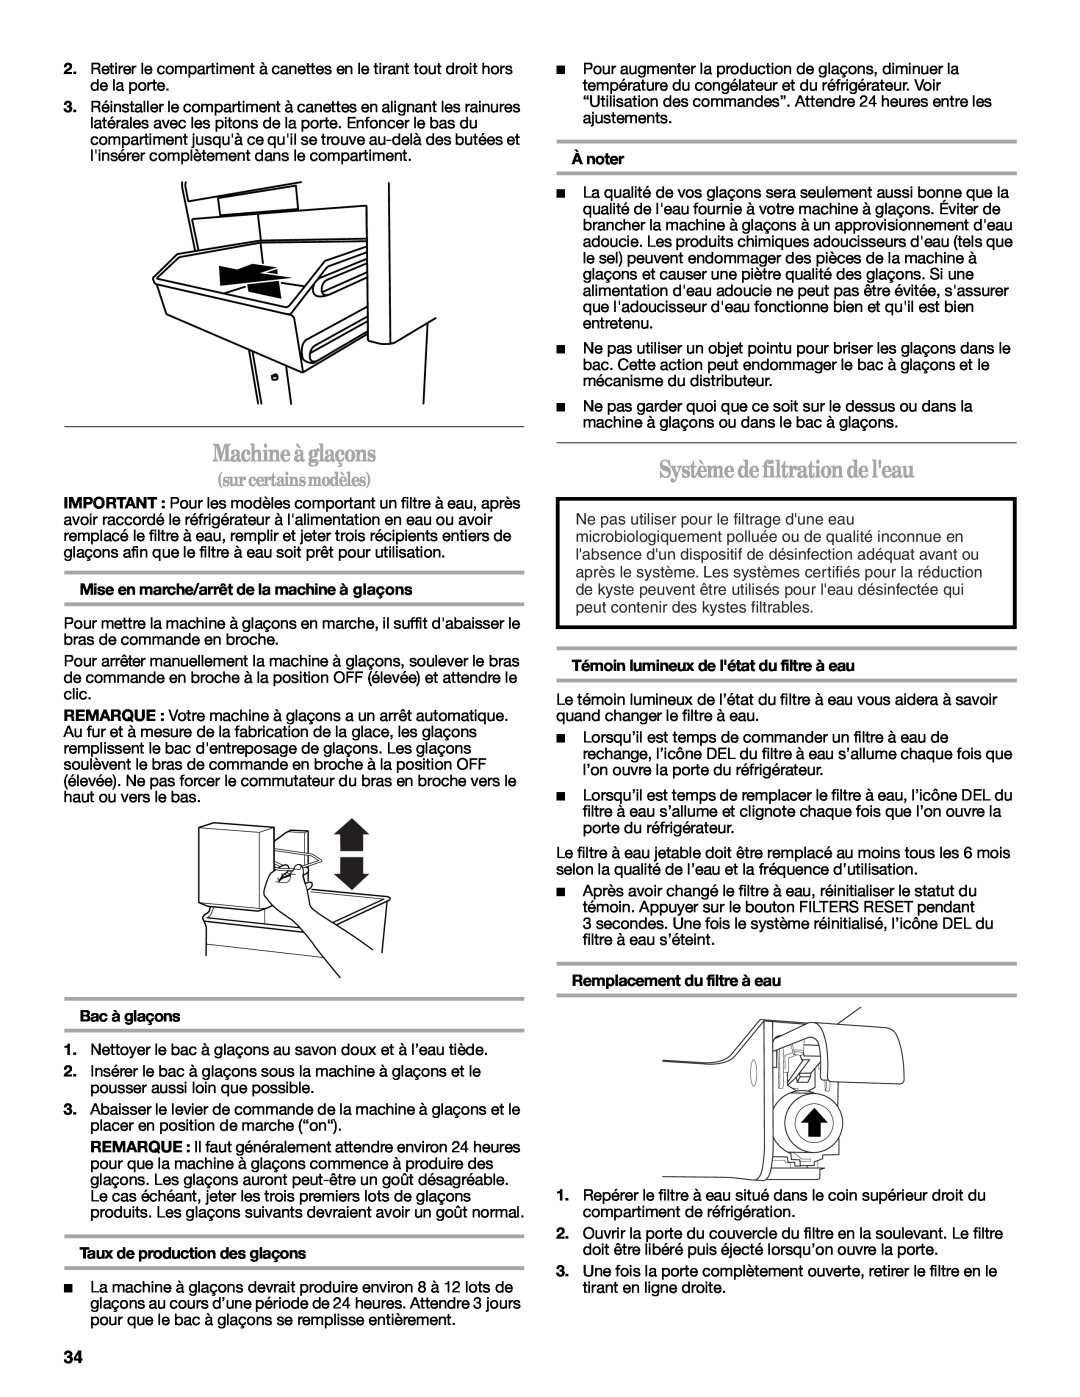 Whirlpool W10343810A Machine à glaçons, Système defiltrationde leau, surcertainsmodèles, Bac à glaçons, Ànoter 